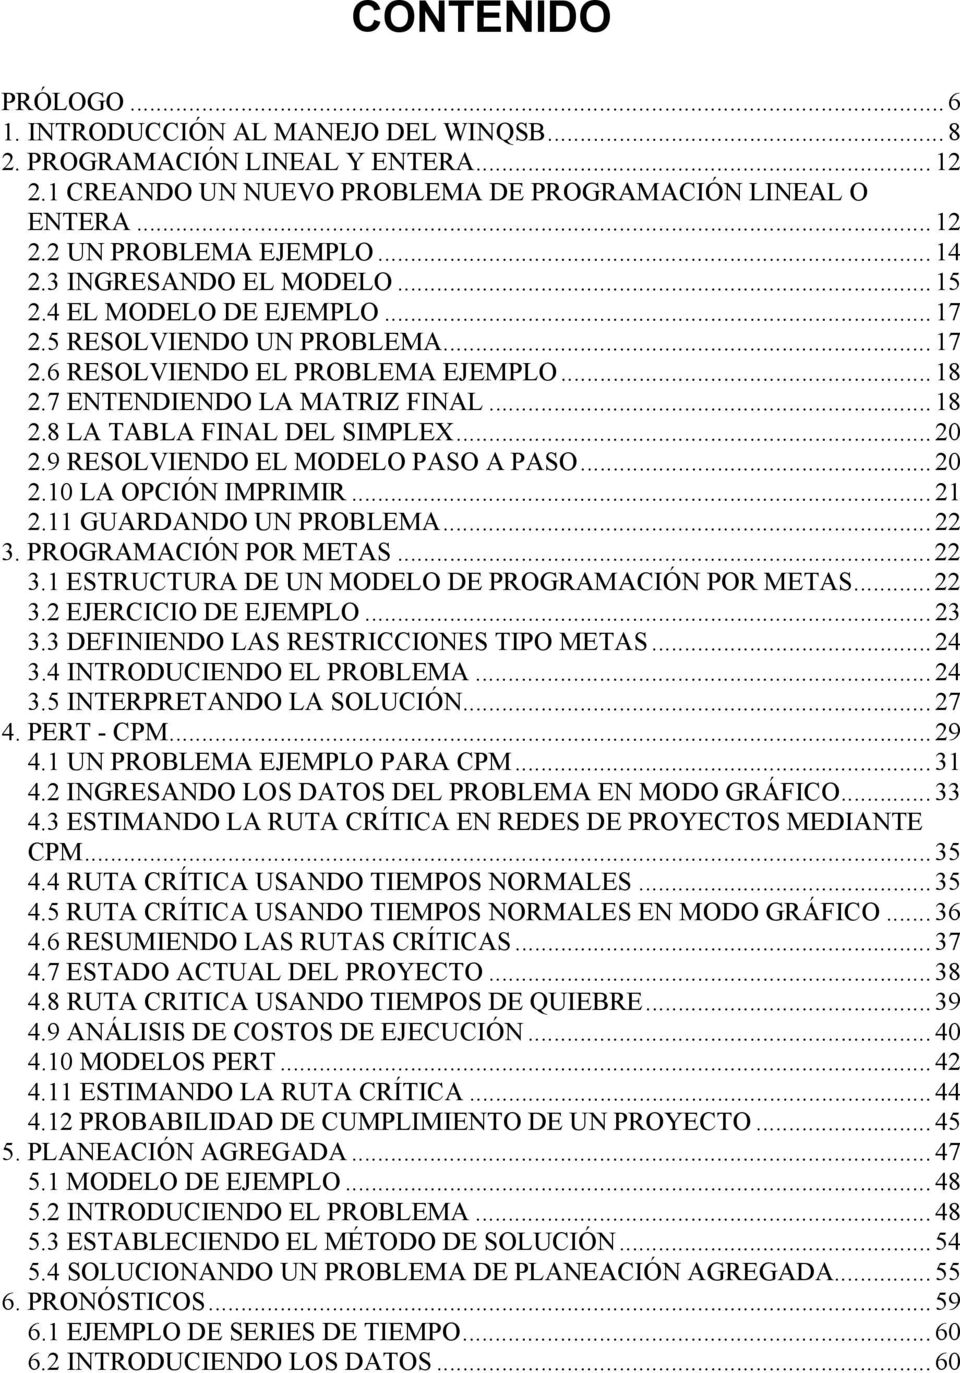 ..20 2.9 RESOLVIENDO EL MODELO PASO A PASO... 20 2.10 LA OPCIÓN IMPRIMIR...21 2.11 GUARDANDO UN PROBLEMA...22 3. PROGRAMACIÓN POR METAS... 22 3.1 ESTRUCTURA DE UN MODELO DE PROGRAMACIÓN POR METAS.